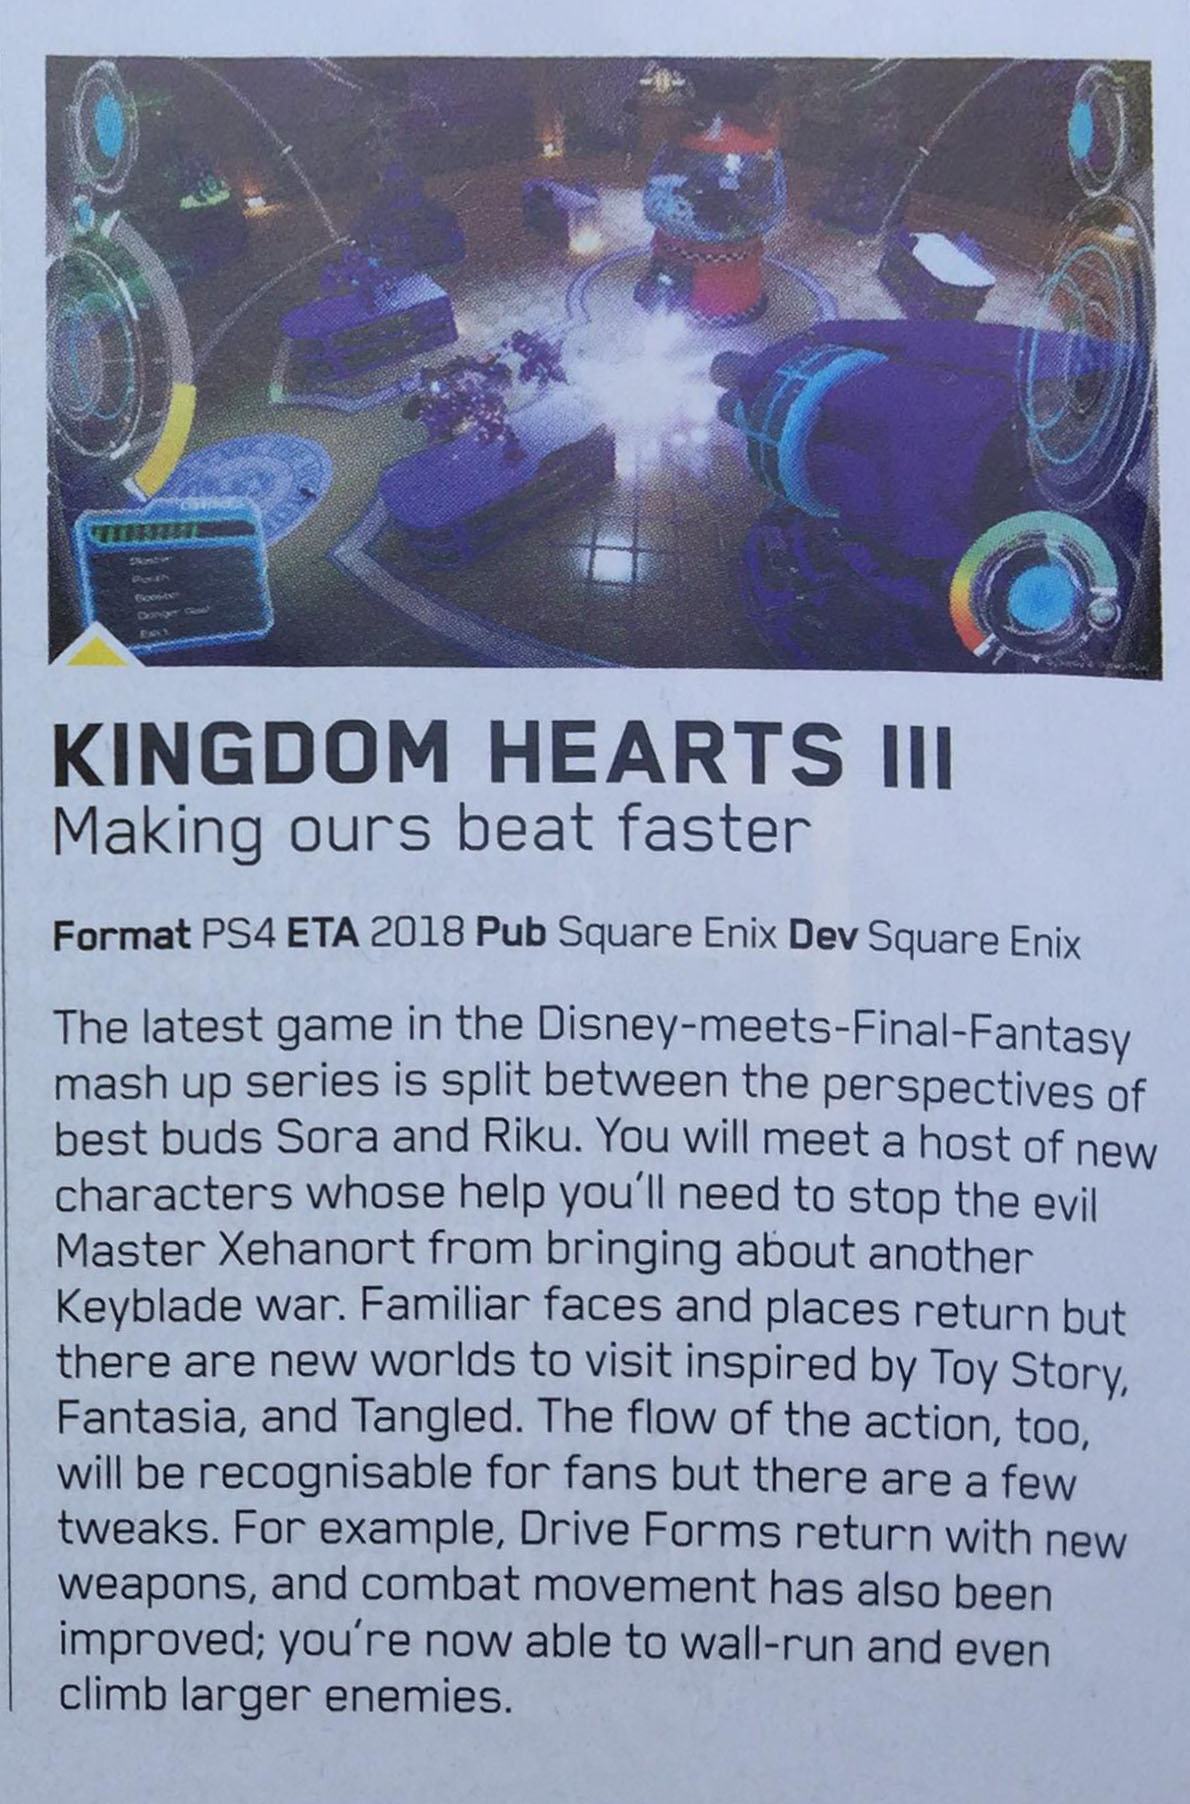 Riku giocabile e il mondo di Fantasia in Kingdom Hearts 3? 8